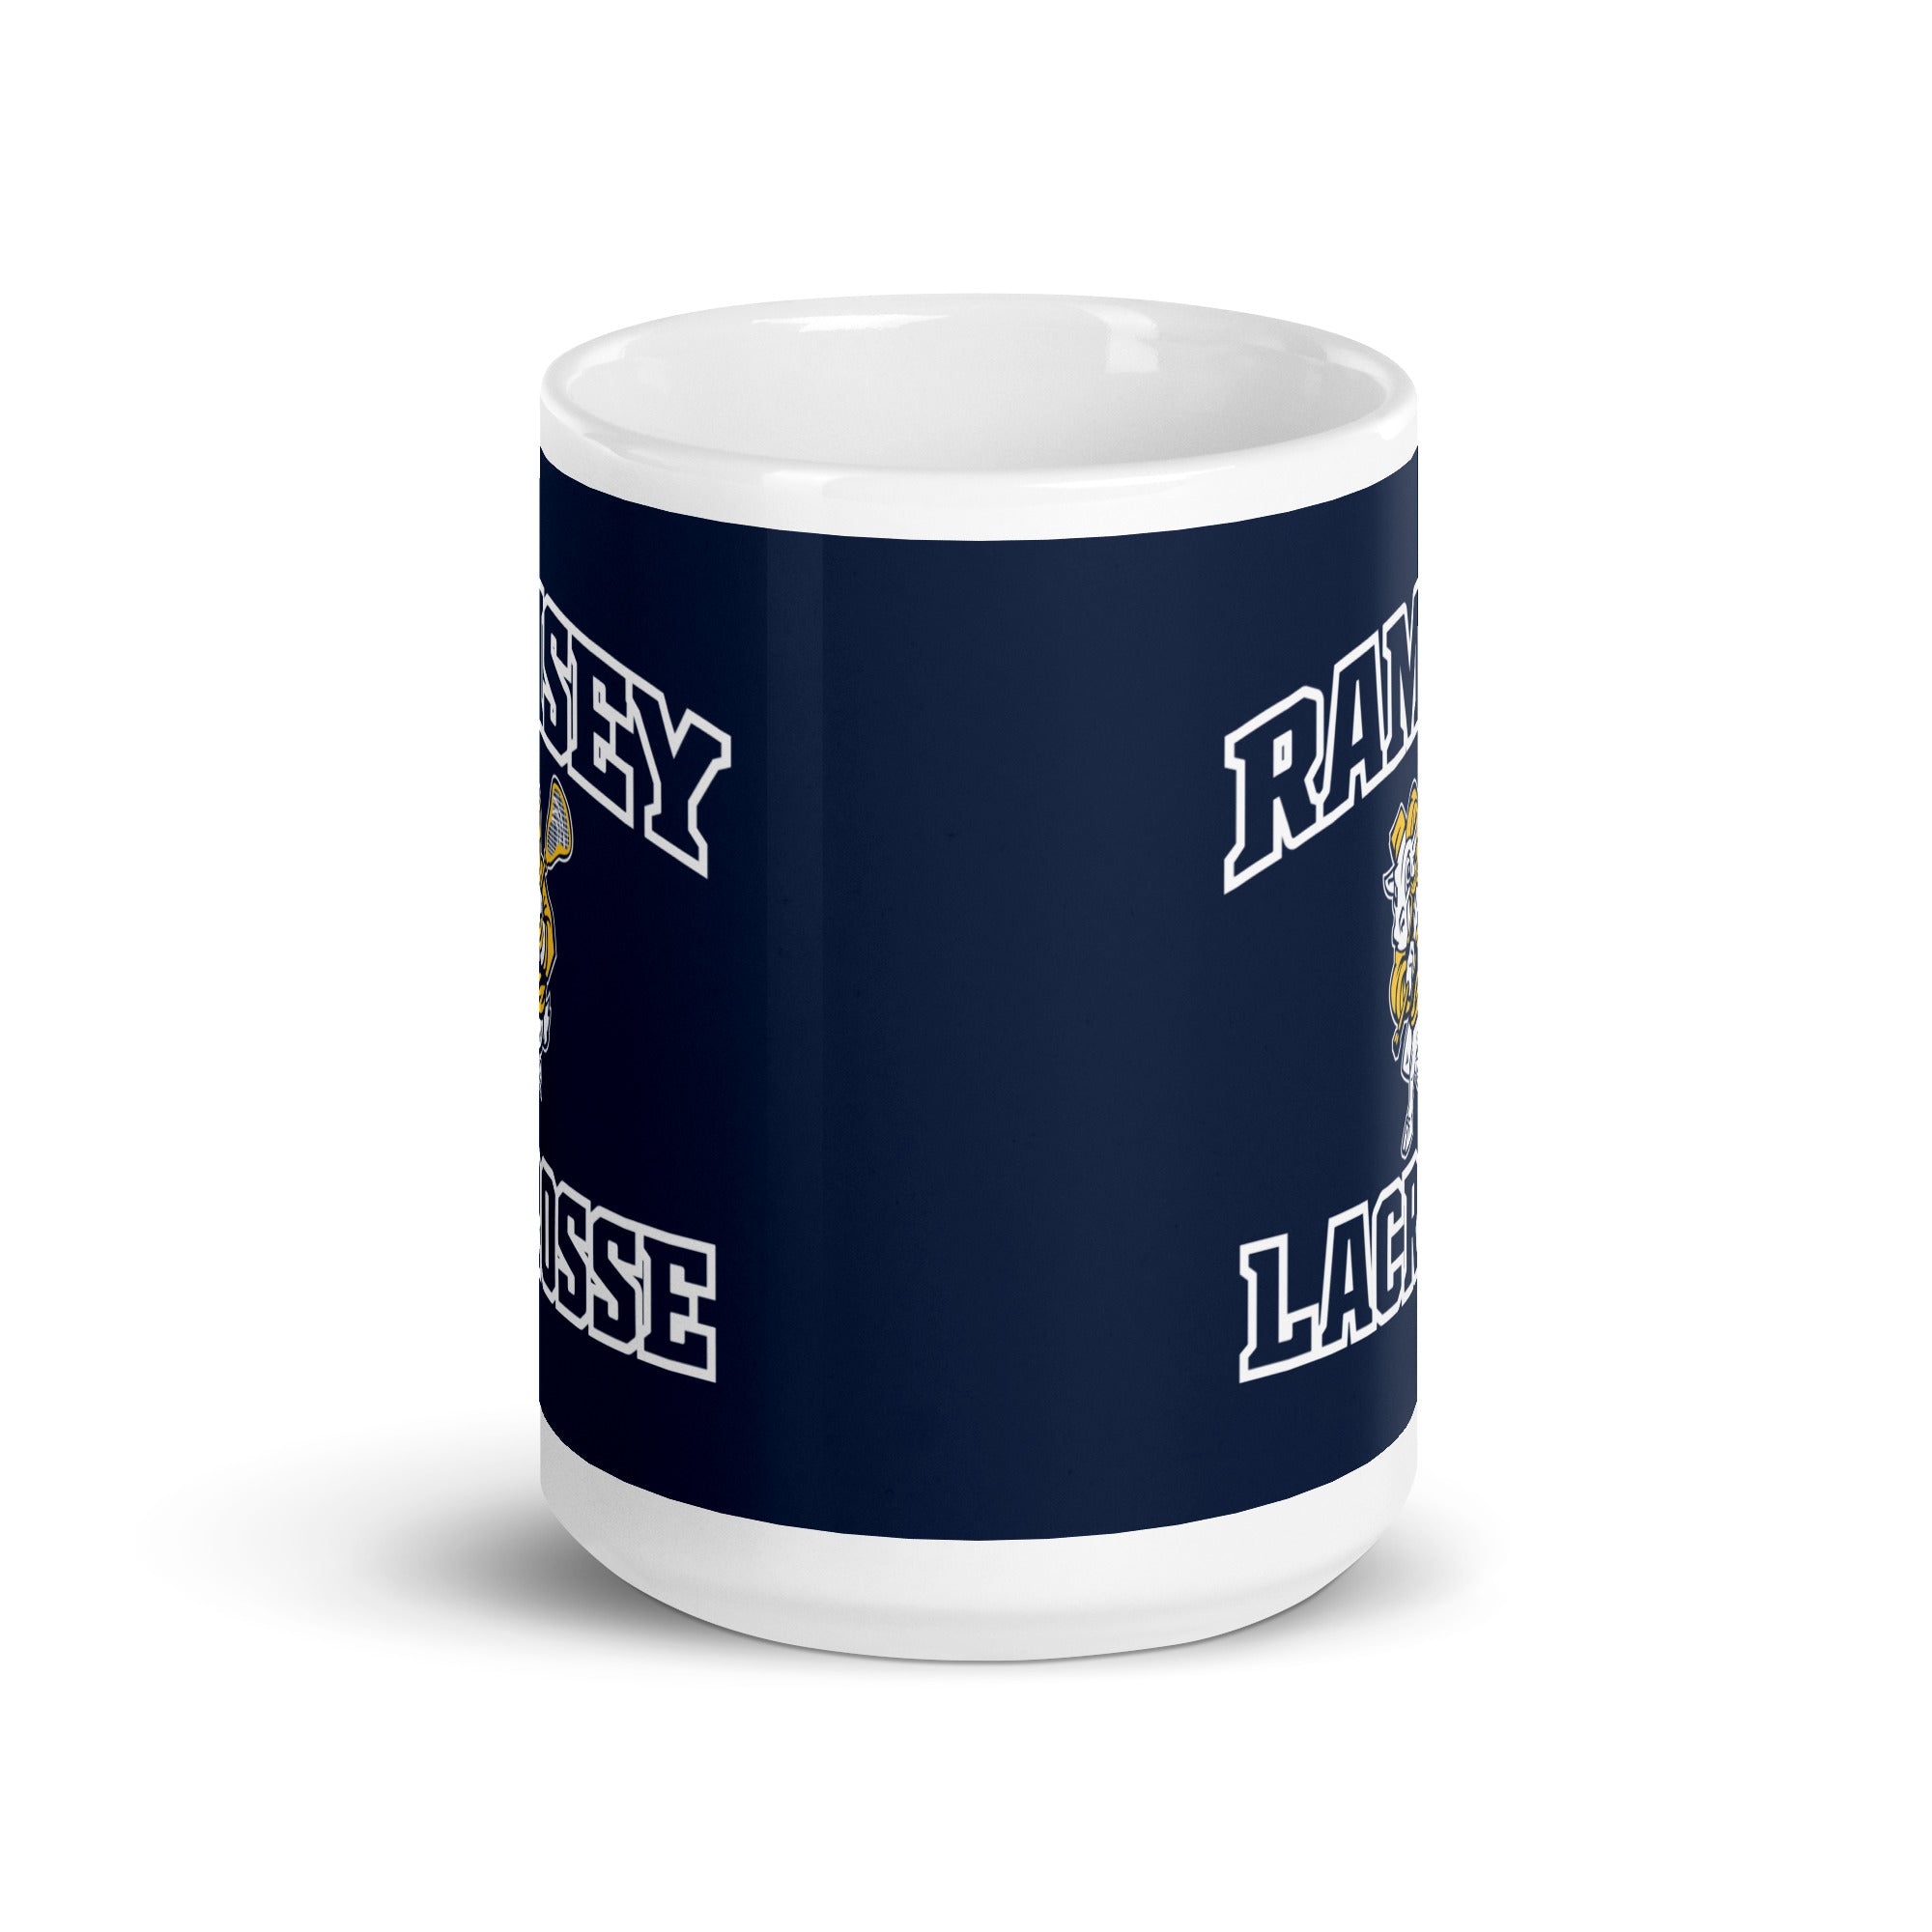 RJL White glossy mug